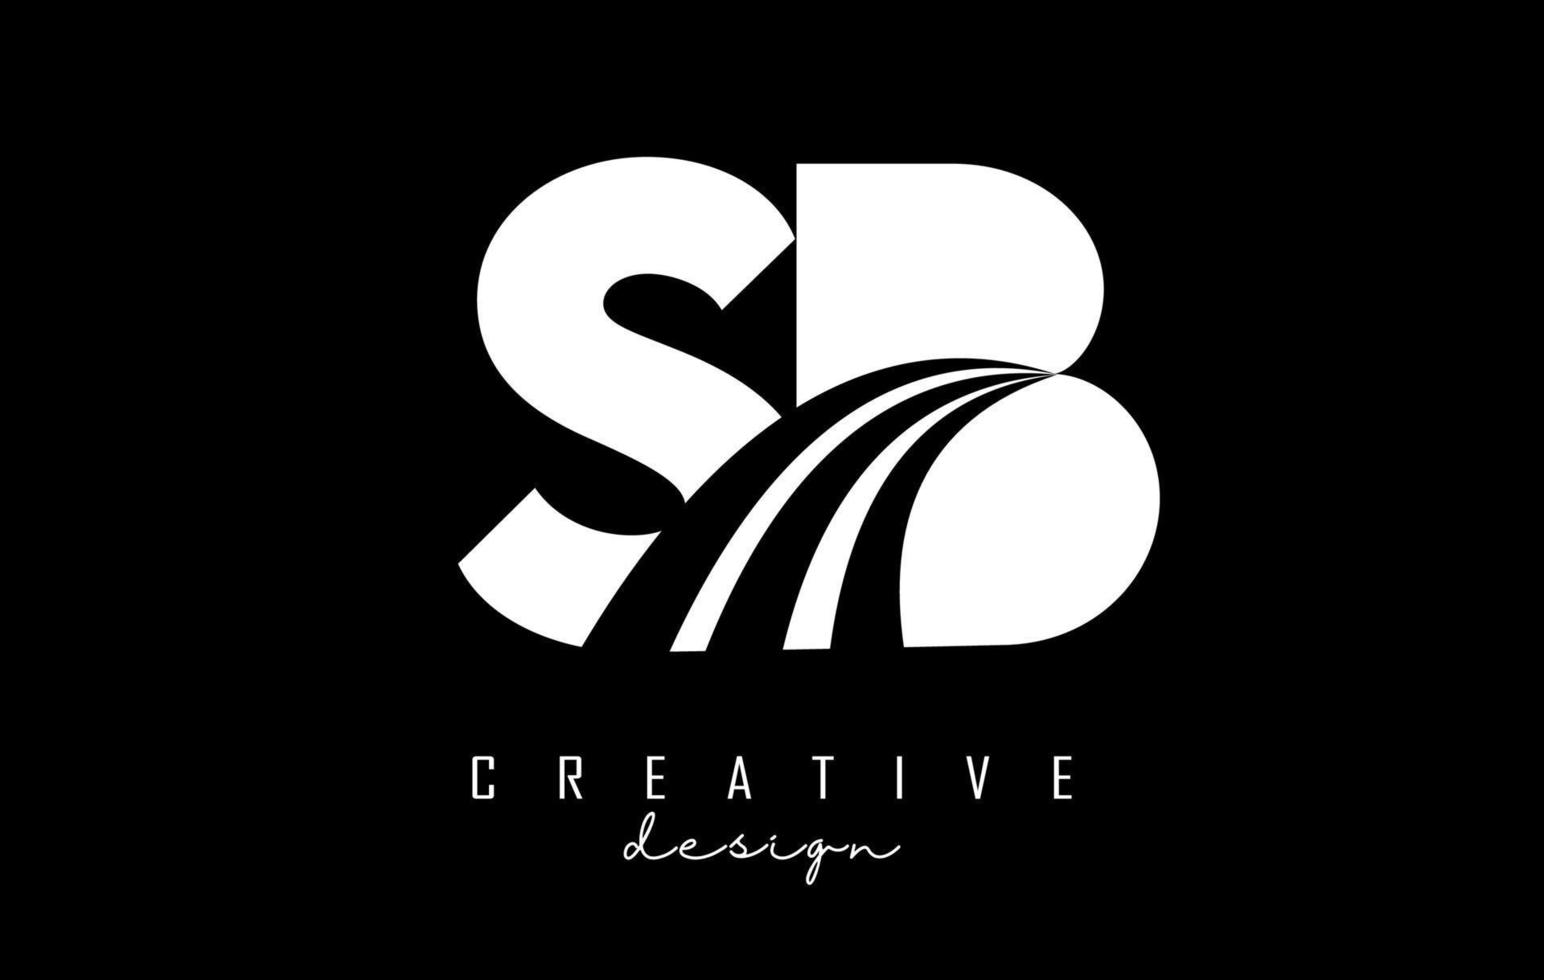 kreative weiße buchstaben sb sb-logo mit führenden linien und straßenkonzeptdesign. Buchstaben mit geometrischem Design. vektor